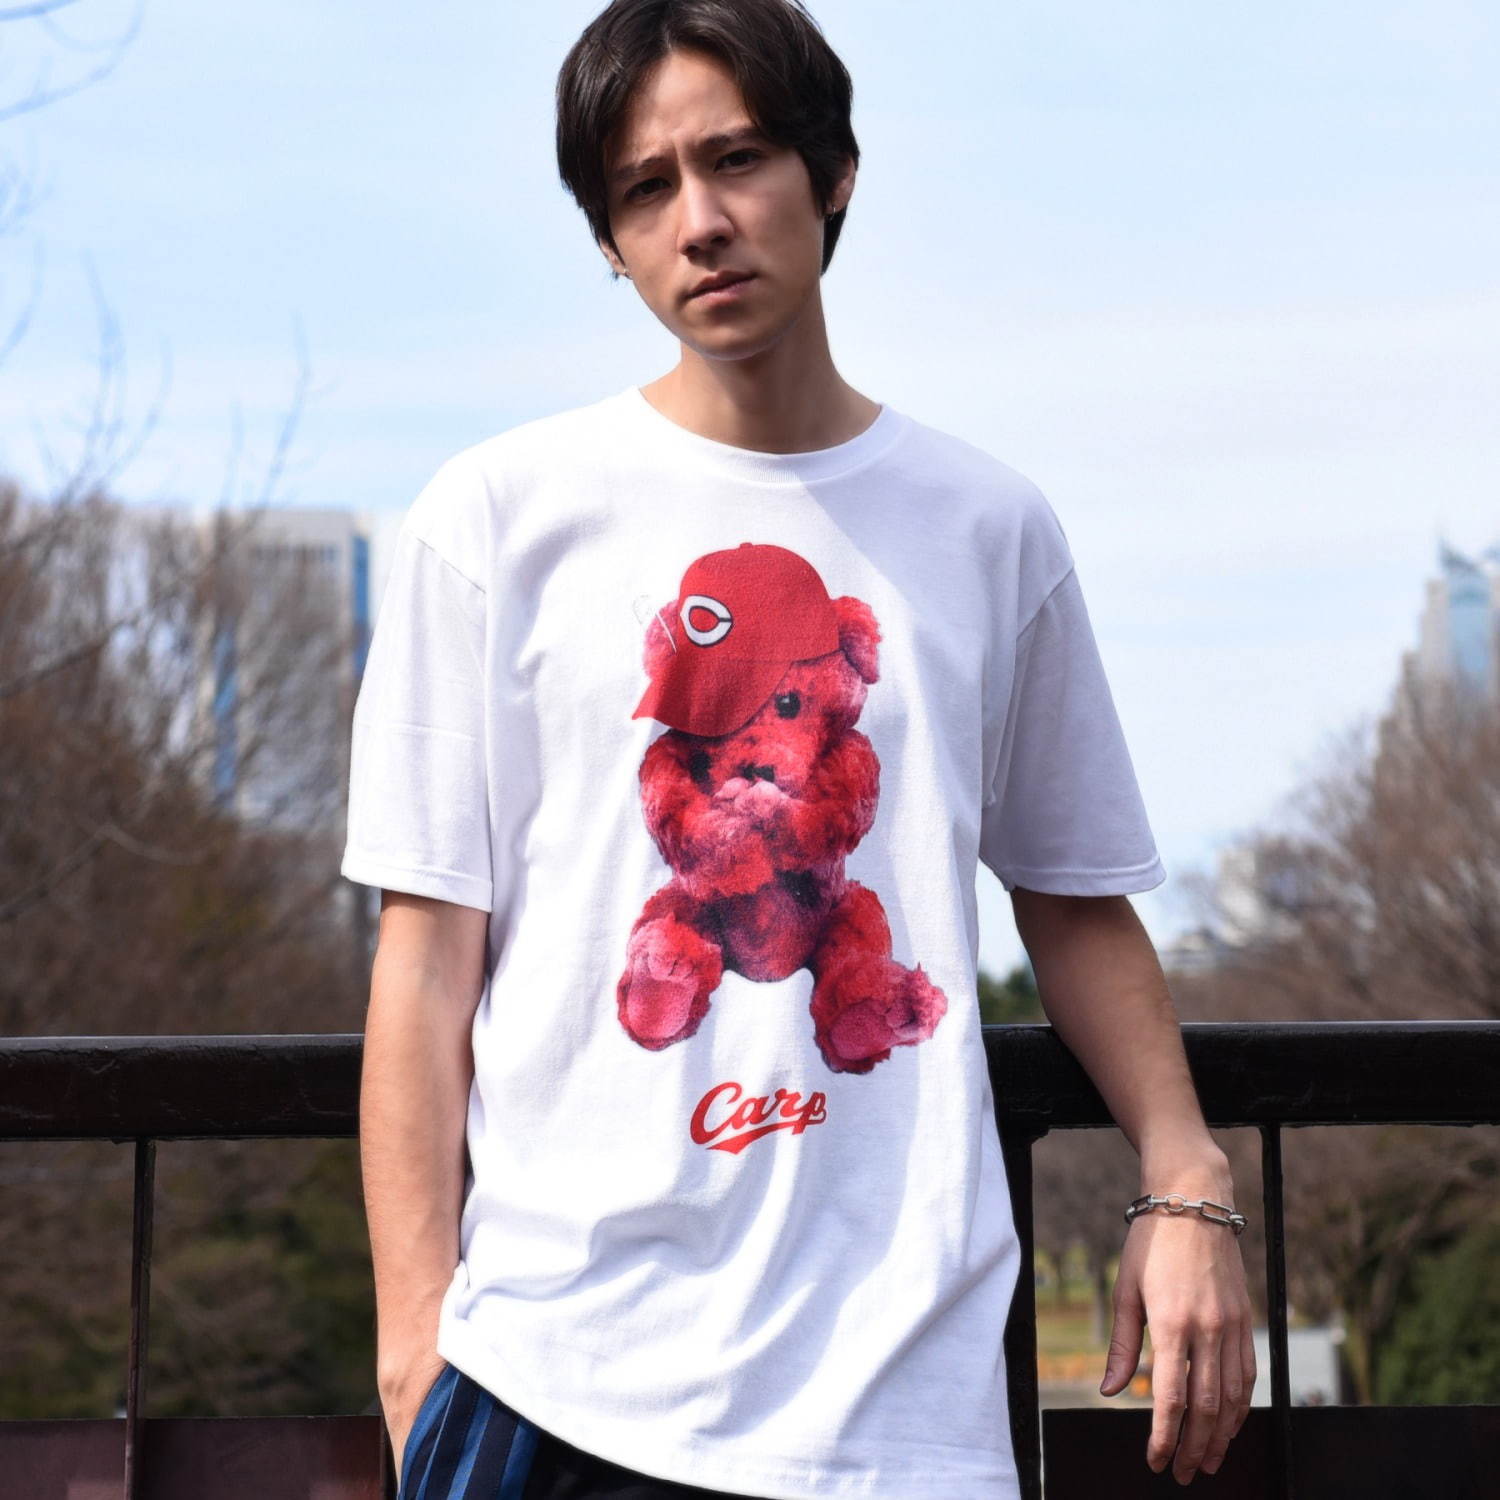 広島カープ ランド バイ ミルクボーイ カープ女子 グラフィックのtシャツ 真っ赤なくまバッグ ファッションプレス